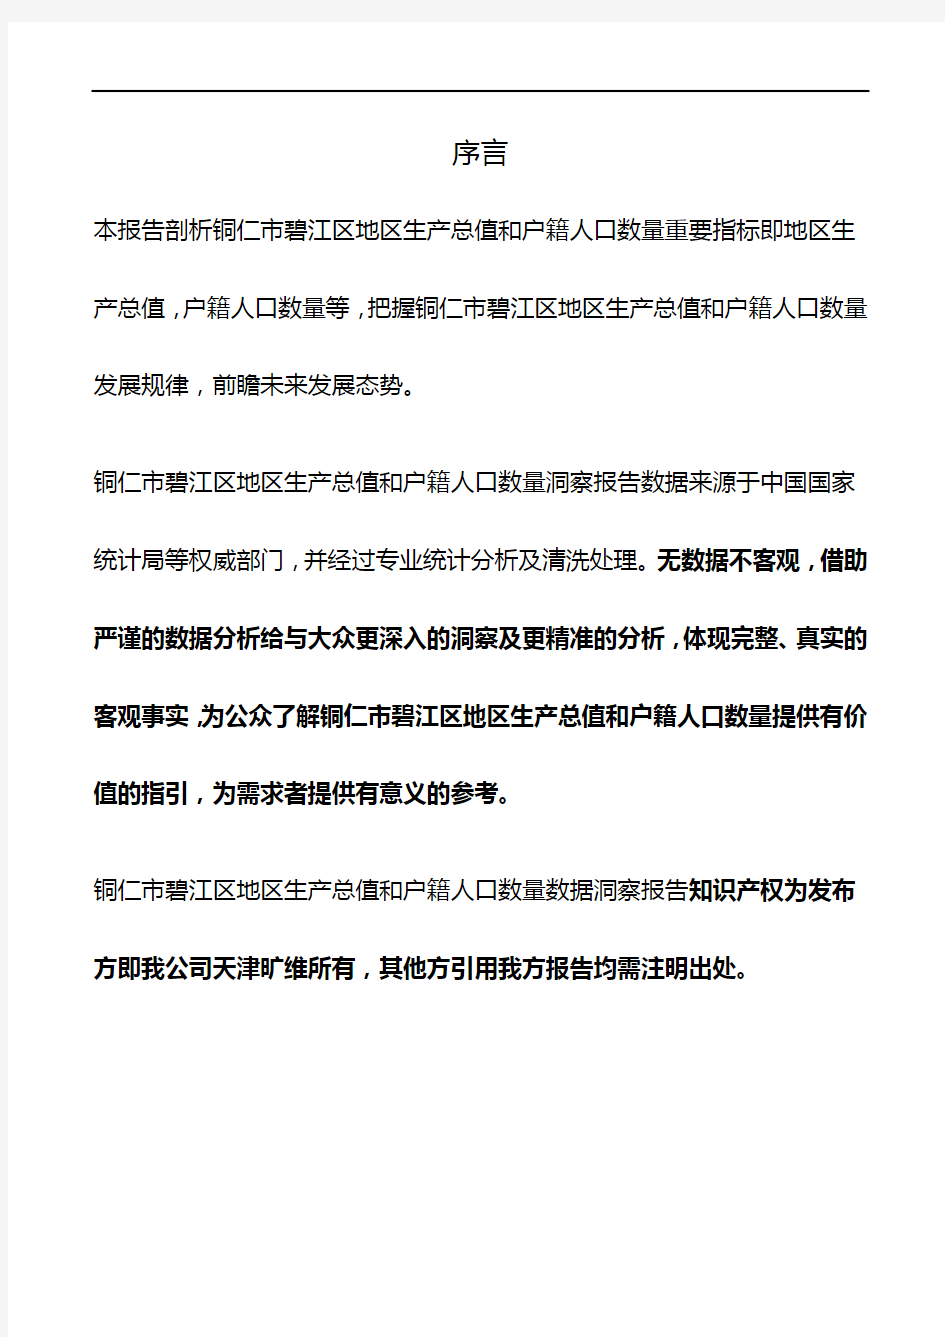 贵州省铜仁市碧江区地区生产总值和户籍人口数量3年数据洞察报告2020版